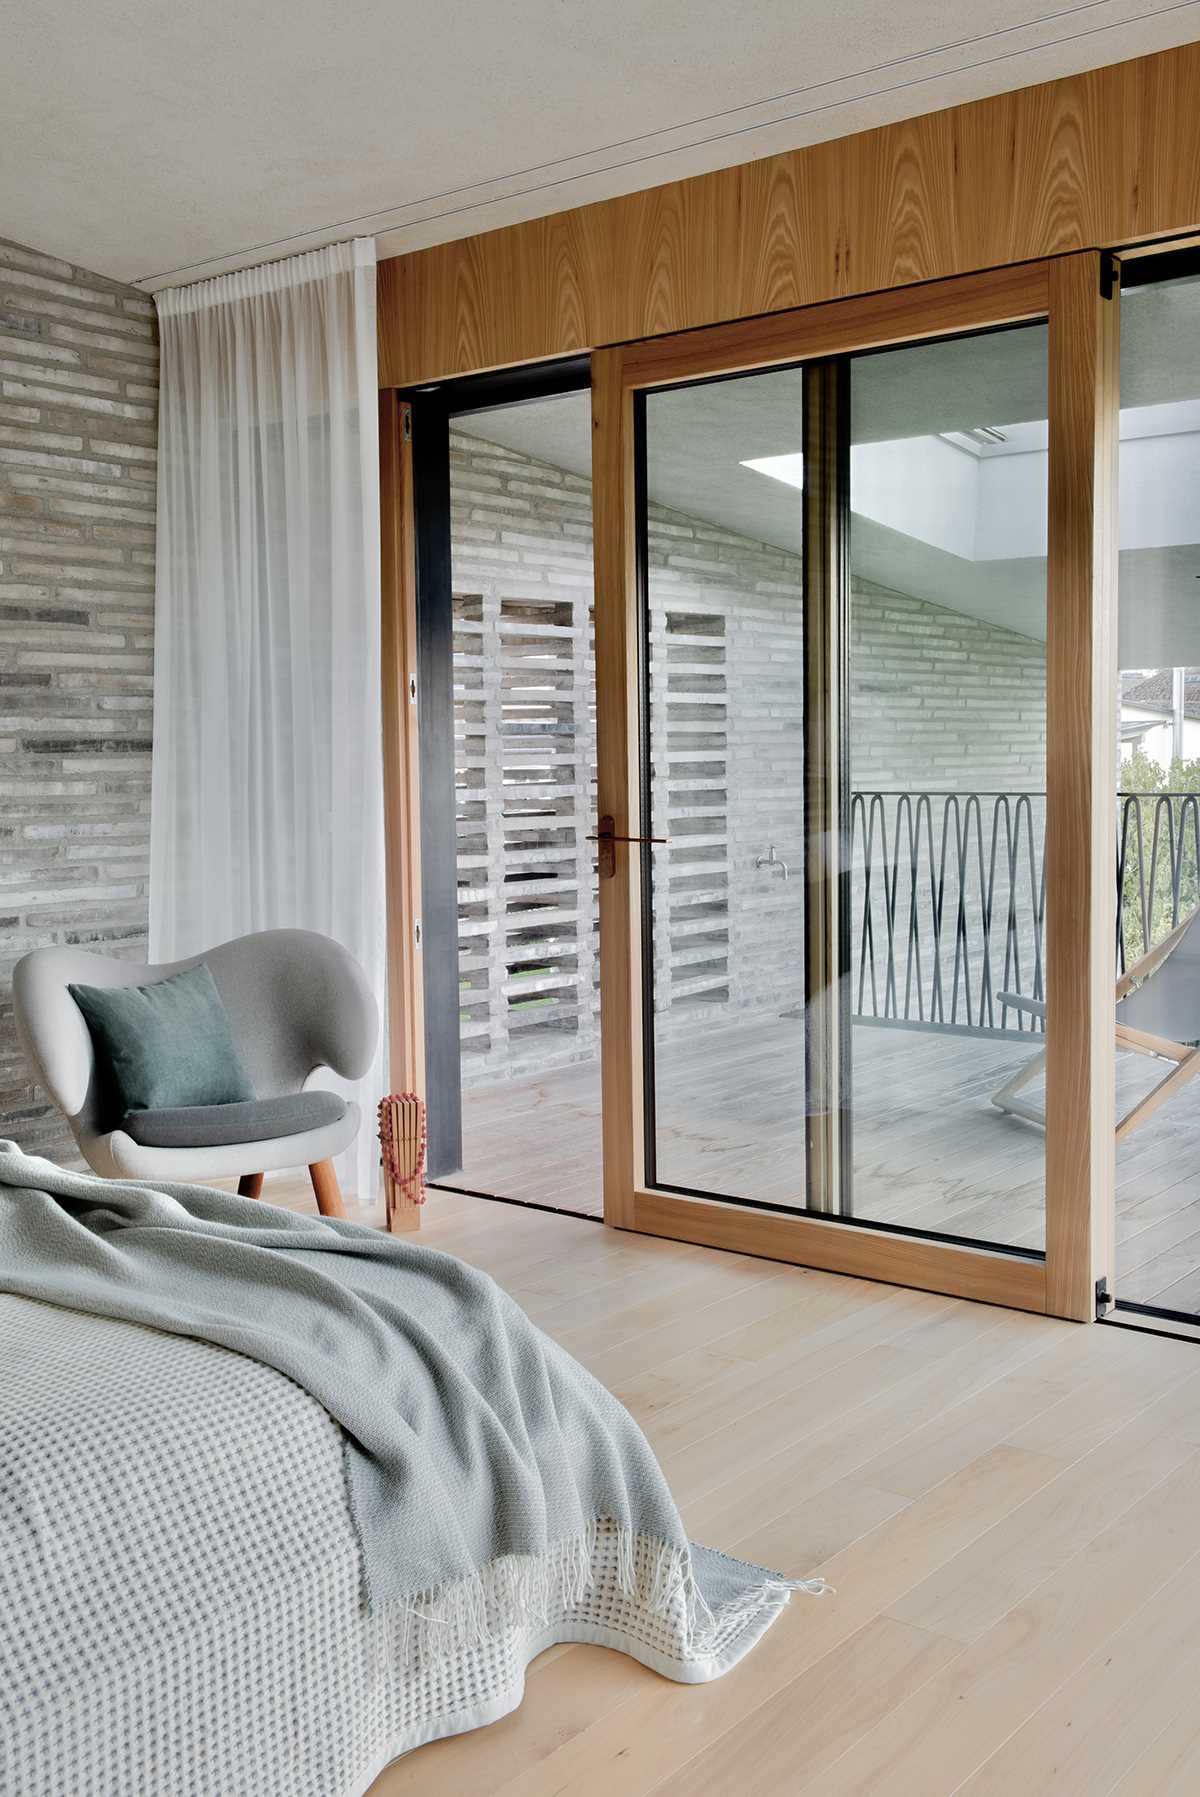 در این اتاق خواب مدرن، دیوار آجری از بیرون به داخل ادامه می یابد، در حالی که می توان از طریق یک در شیشه ای چوبی کشویی به بالکن دسترسی داشت.